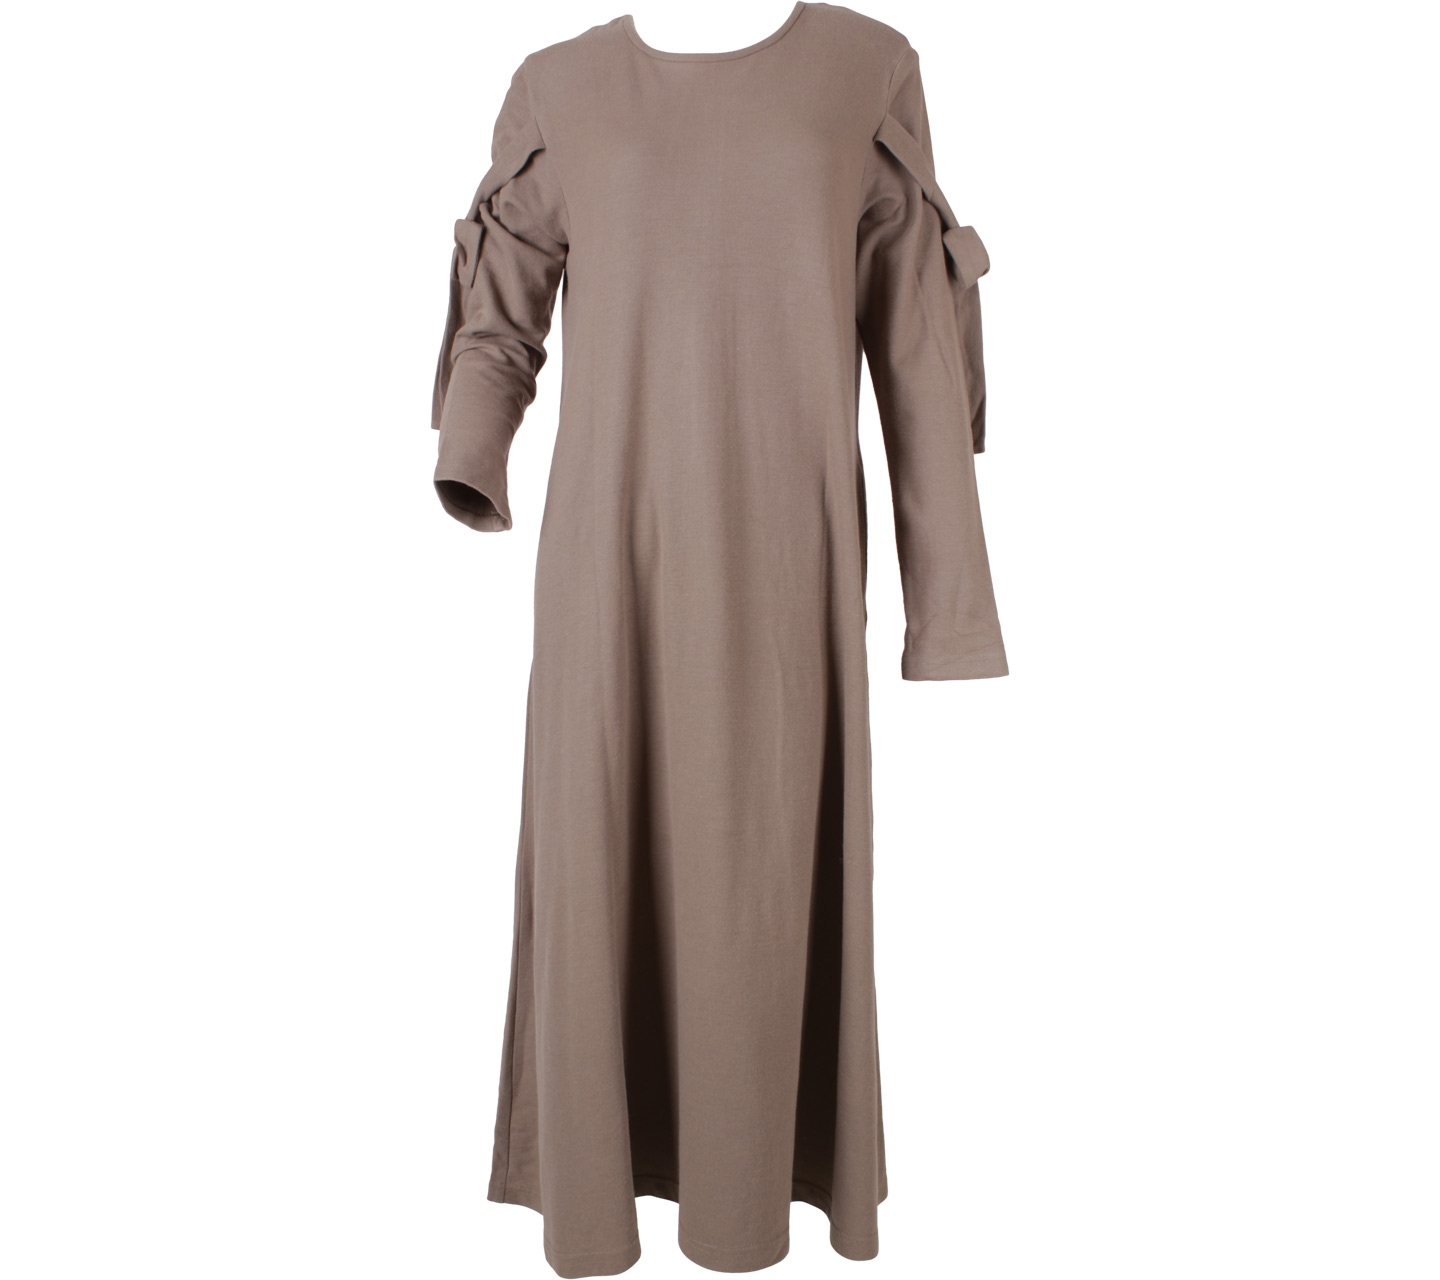 Maima Light Brown Long Dress